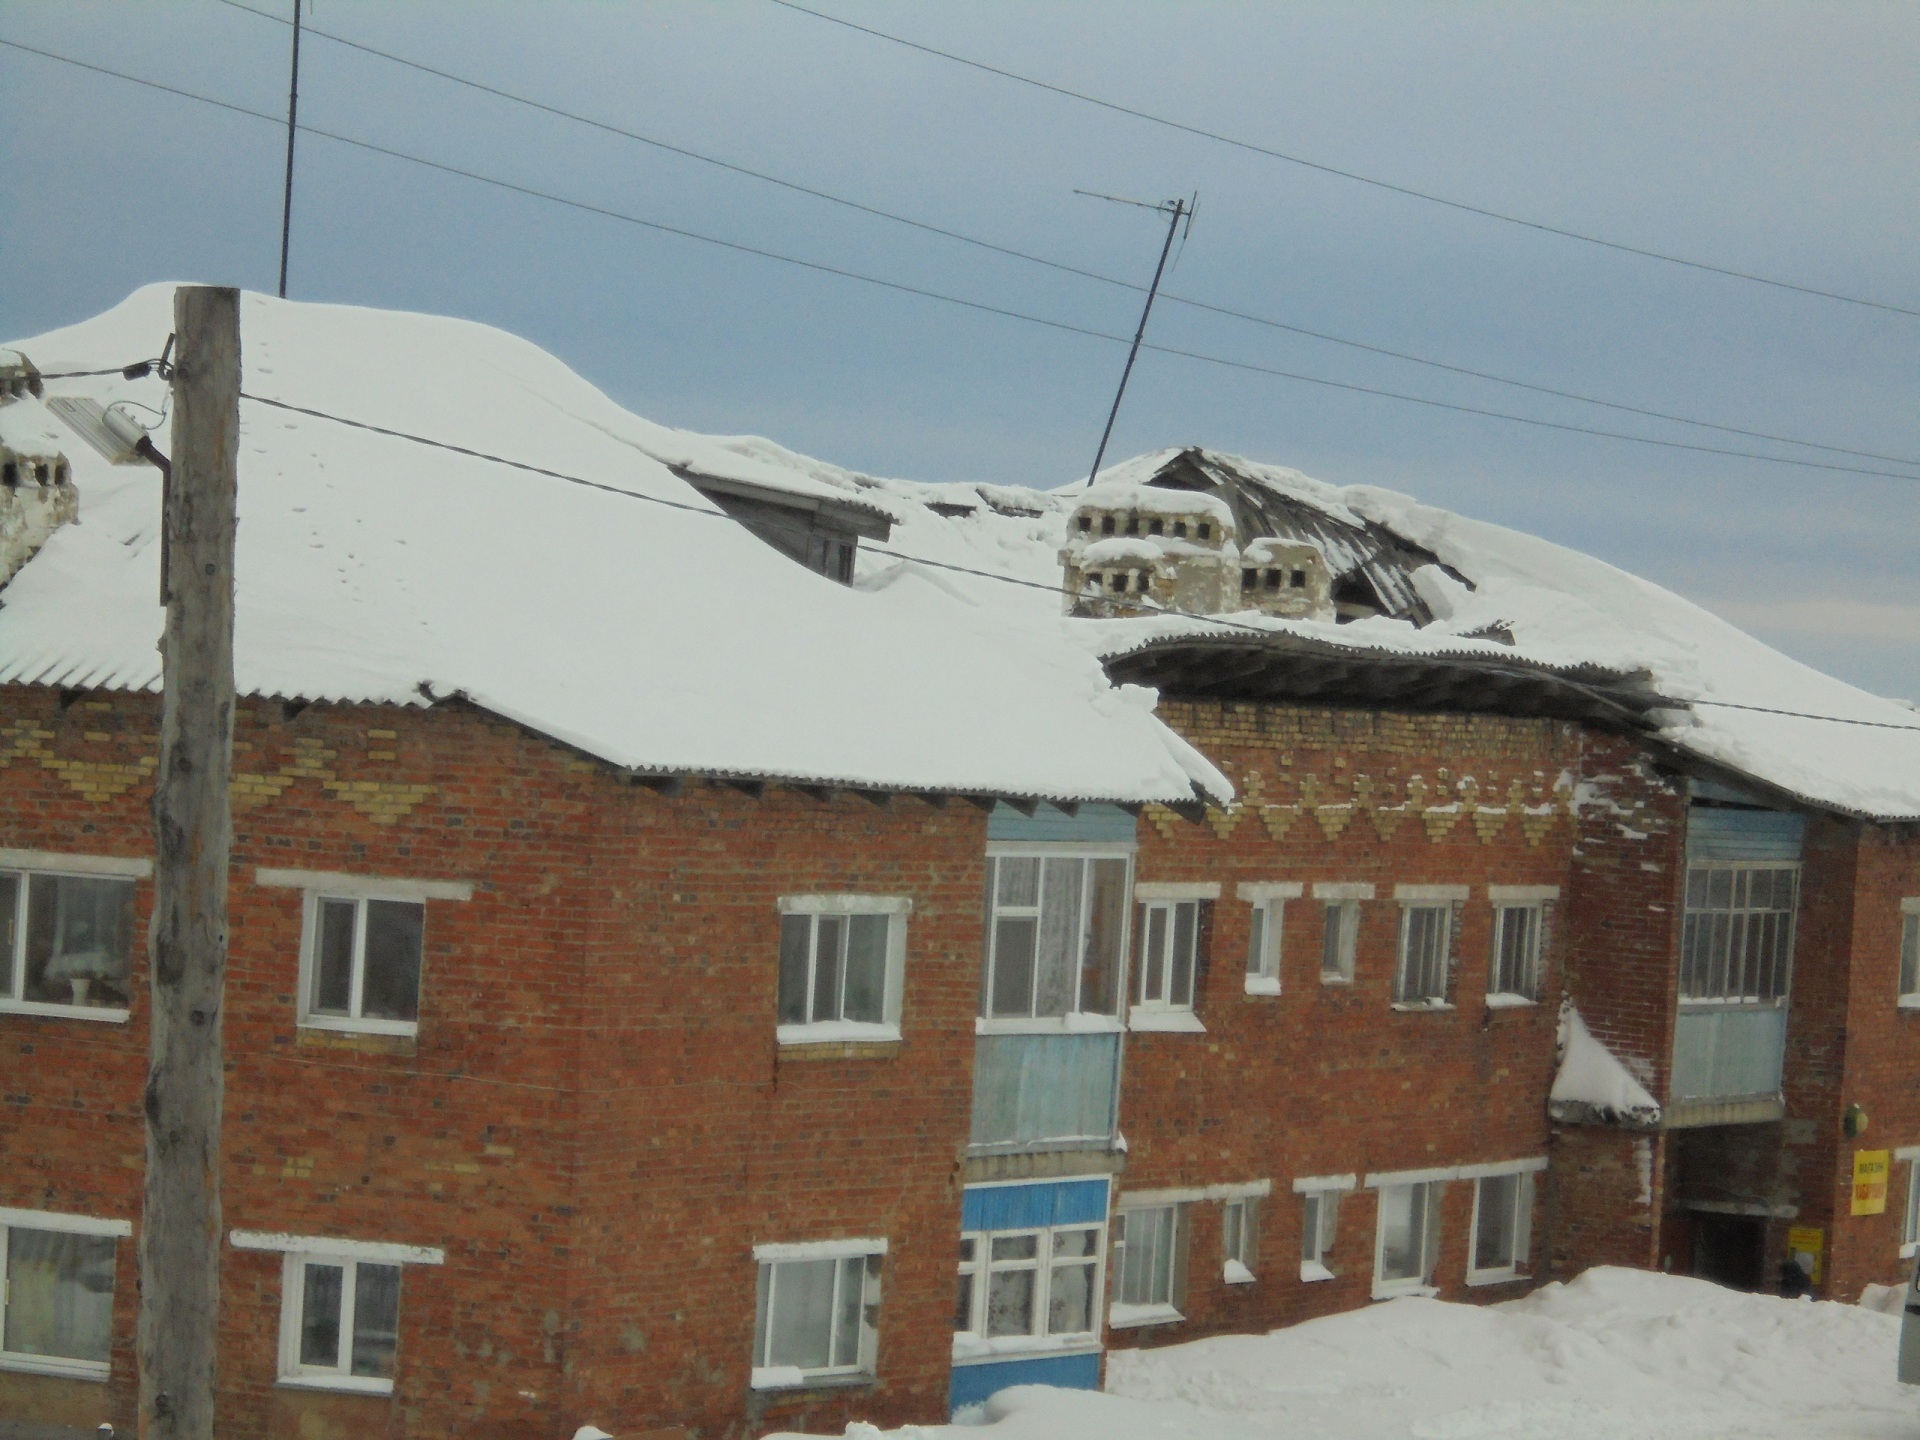 В Коми обрушилась крыша жилого дома